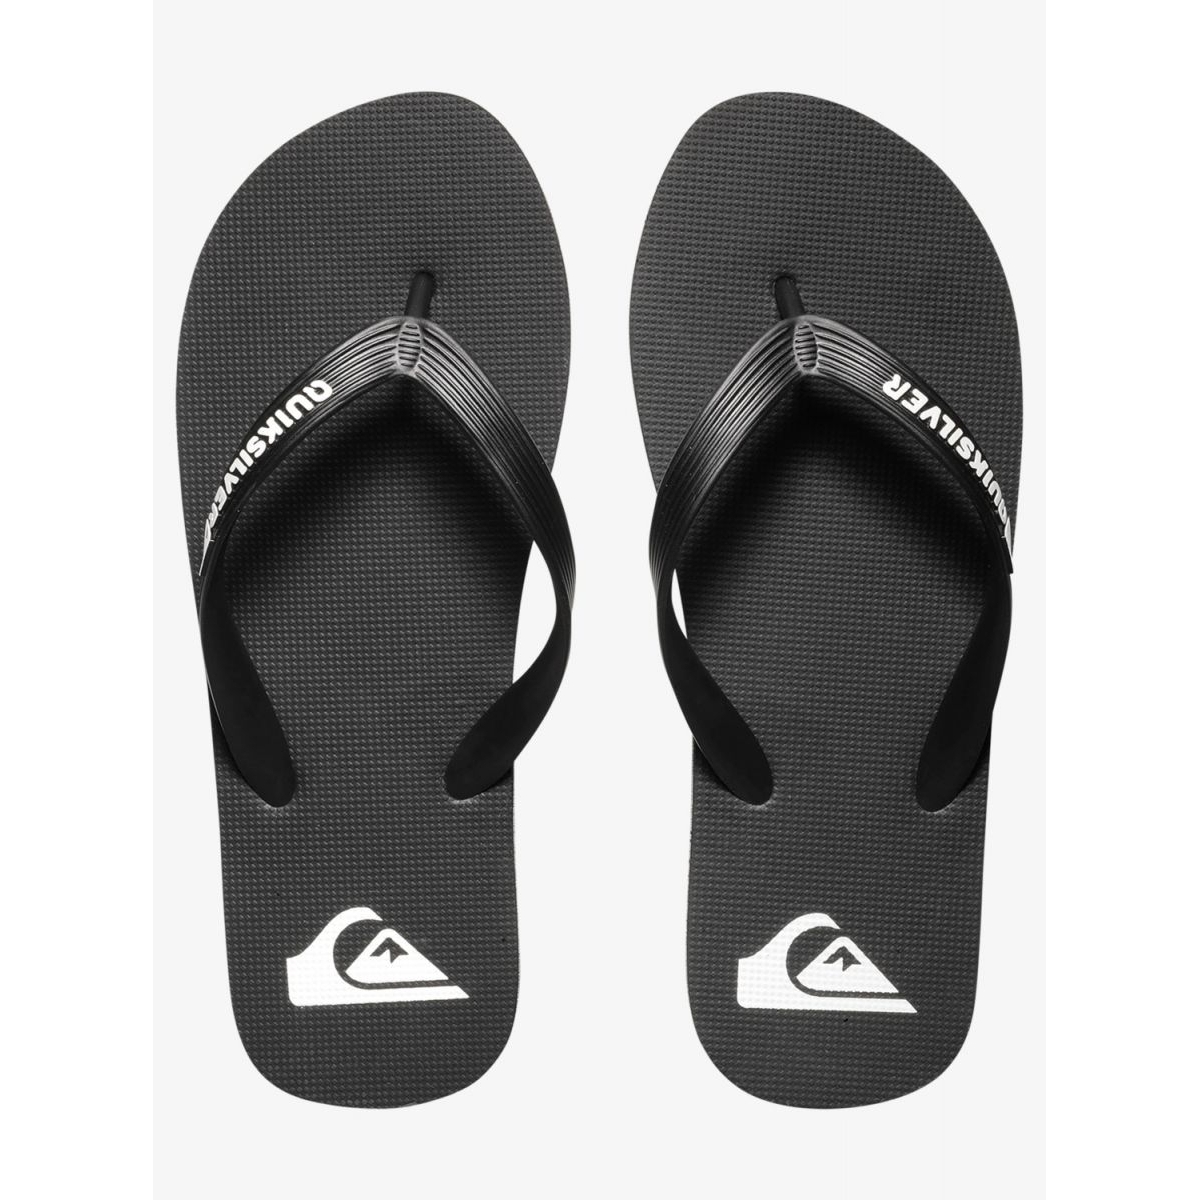 Quiksilver Men's Molokai Flip Flop Sandals Black/Black/White - AQYL100601-XKKW BLACK/BLACK/WHITE - BLACK/BLACK/WHITE, 8